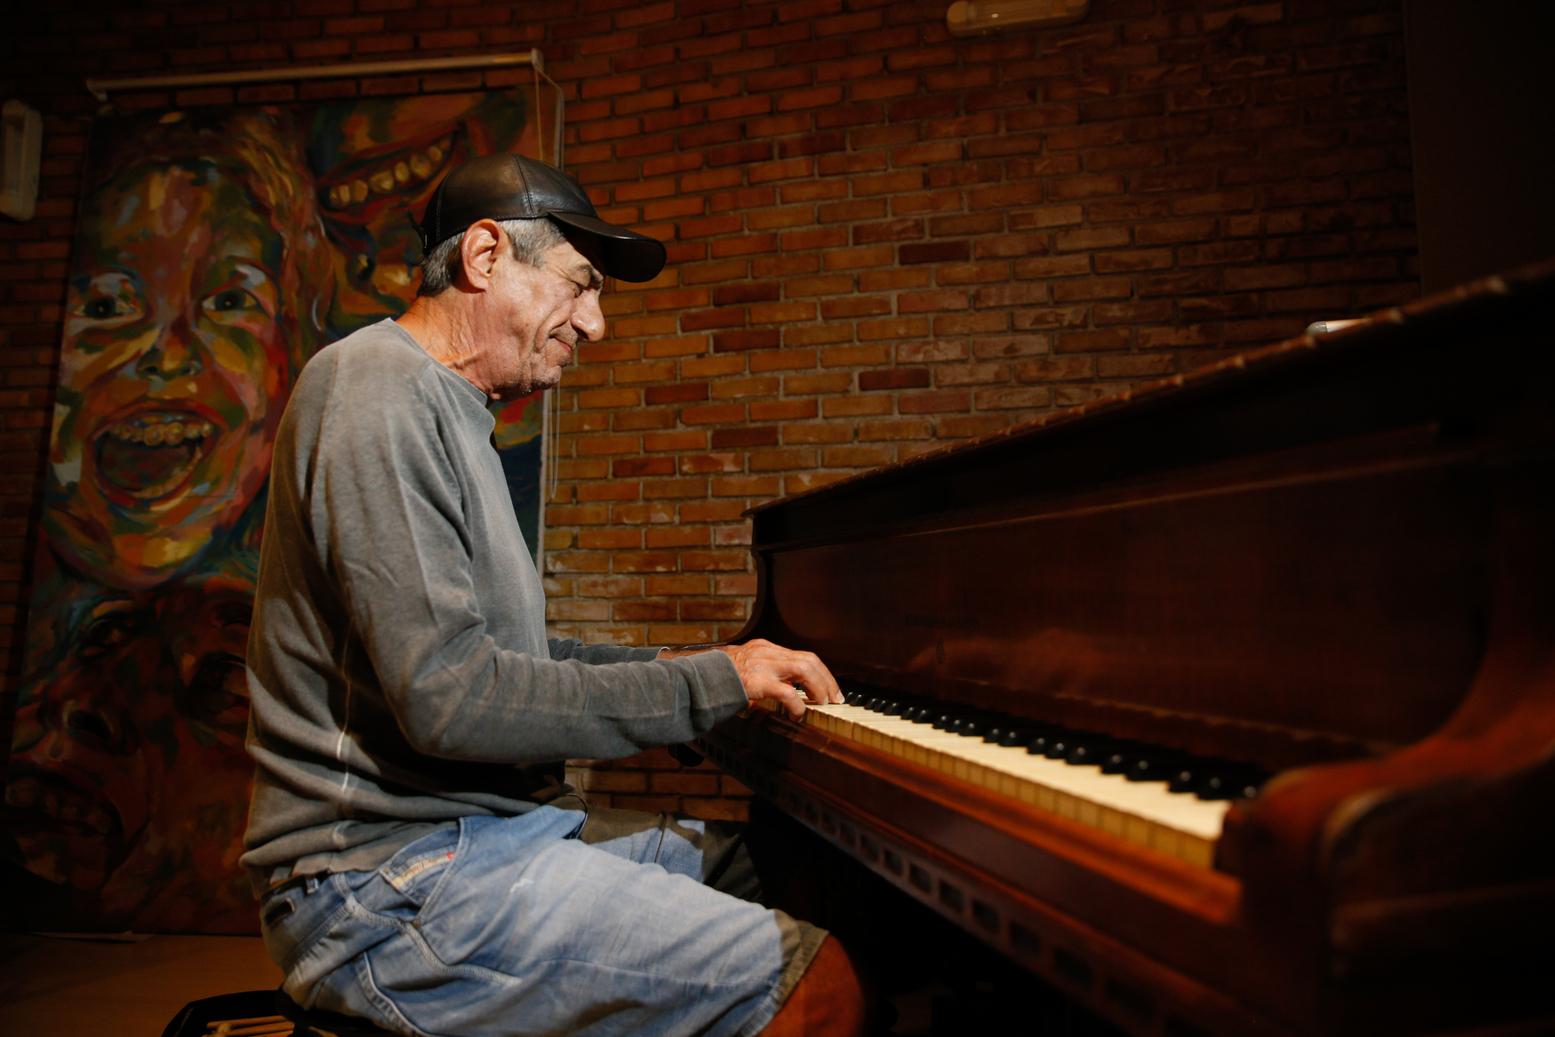 Aos 70 anos, o cantor Fagner partilha orgulhos, arrependimentos e